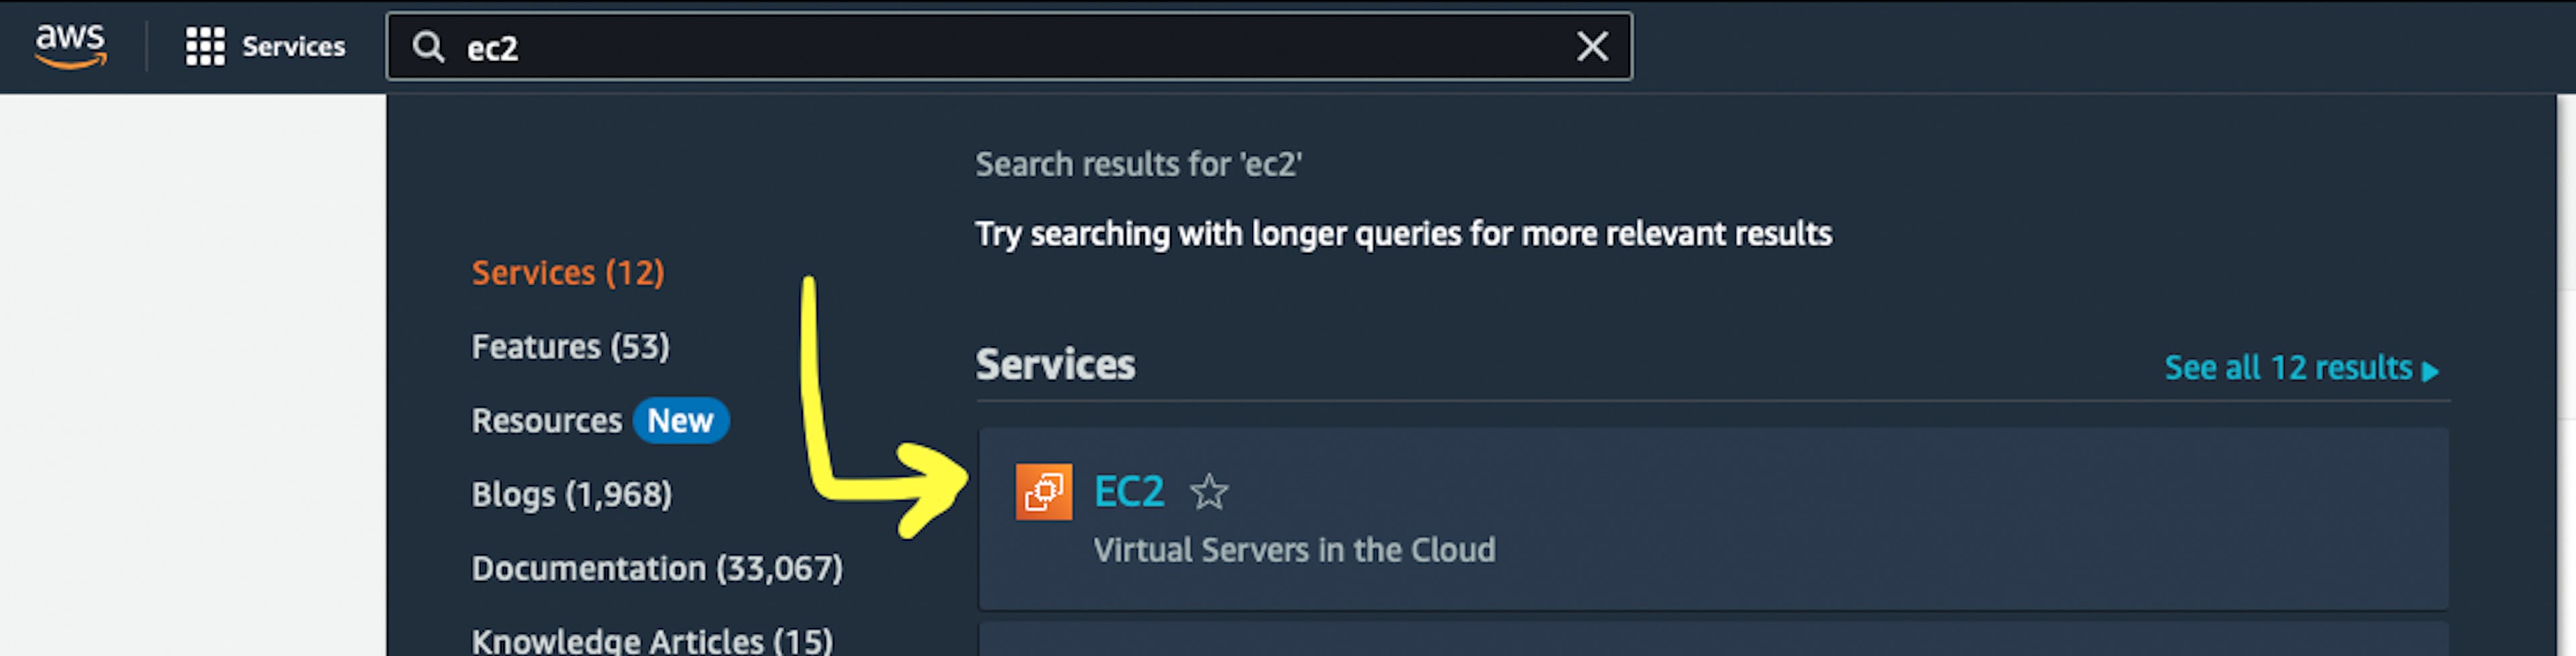 Скриншот веб-страницы AWS с указателем на сервис AWS «EC2».